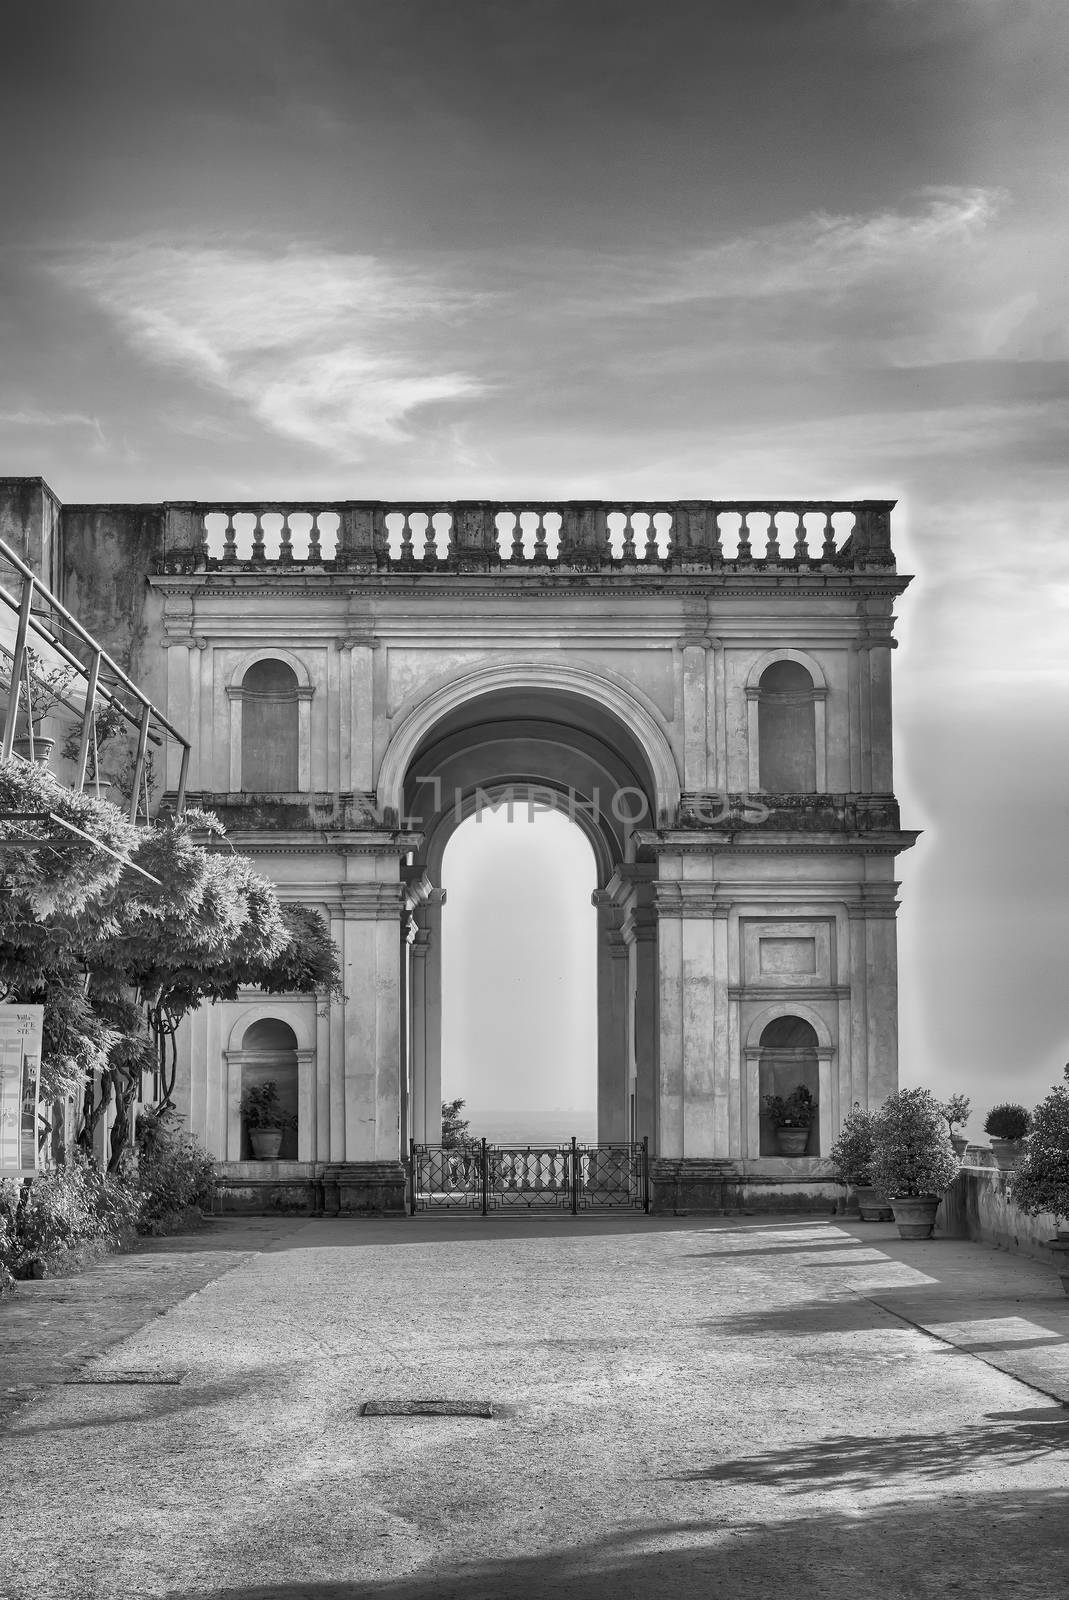 Triumphal Arch in Villa d'Este, Tivoli, Italy by marcorubino